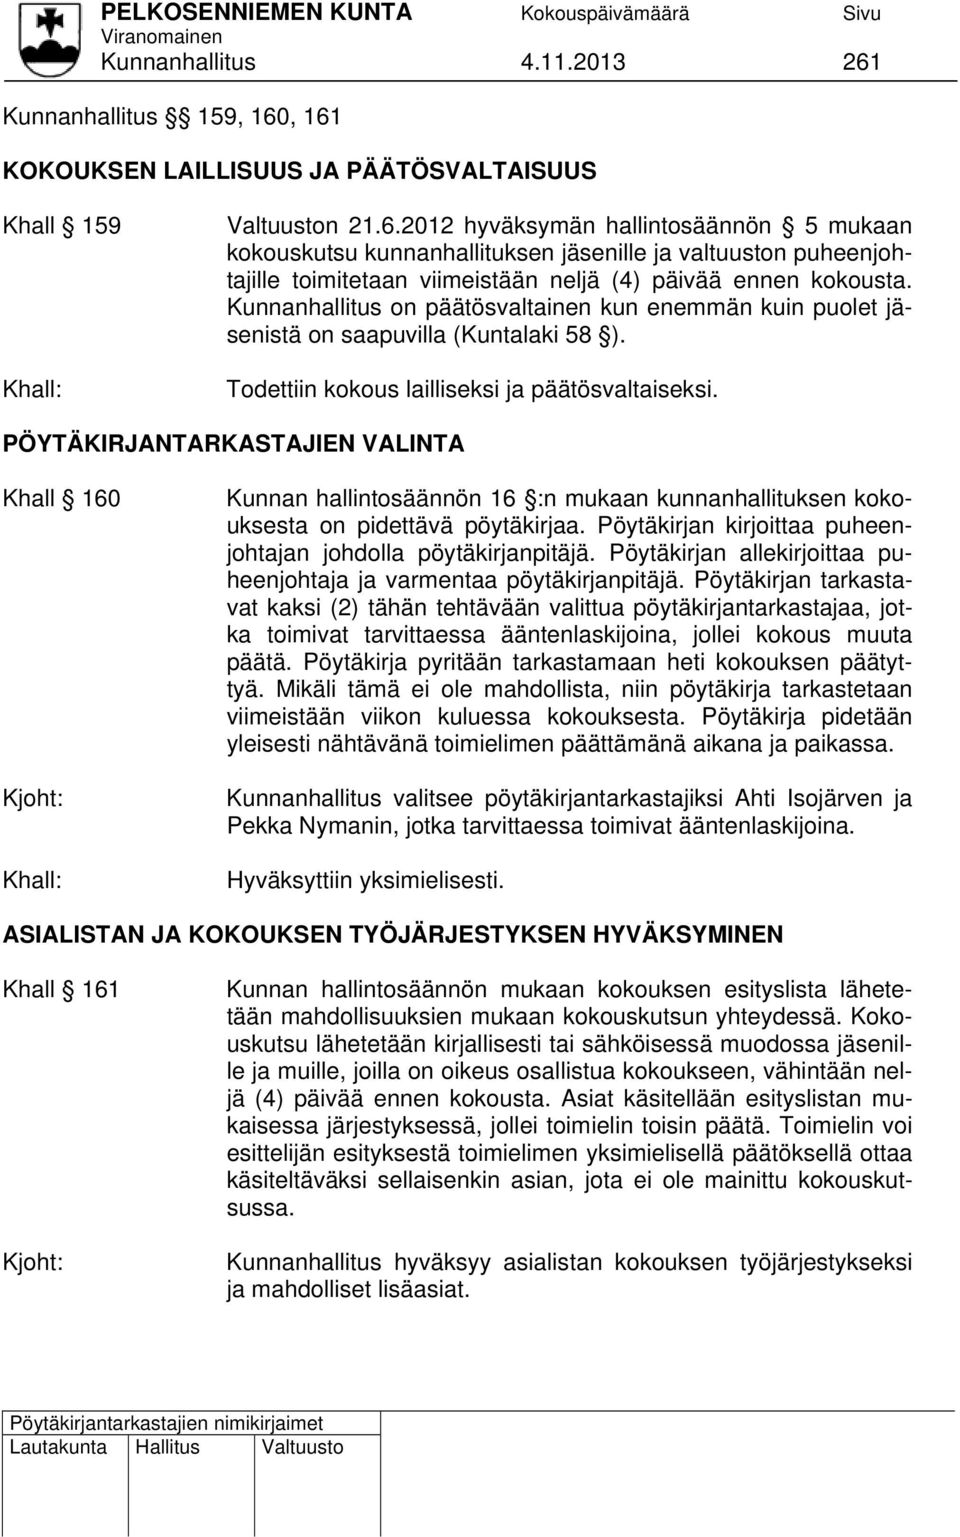 PÖYTÄKIRJANTARKASTAJIEN VALINTA Khall 160 Kjoht: Khall: Kunnan hallintosäännön 16 :n mukaan kunnanhallituksen kokouksesta on pidettävä pöytäkirjaa.